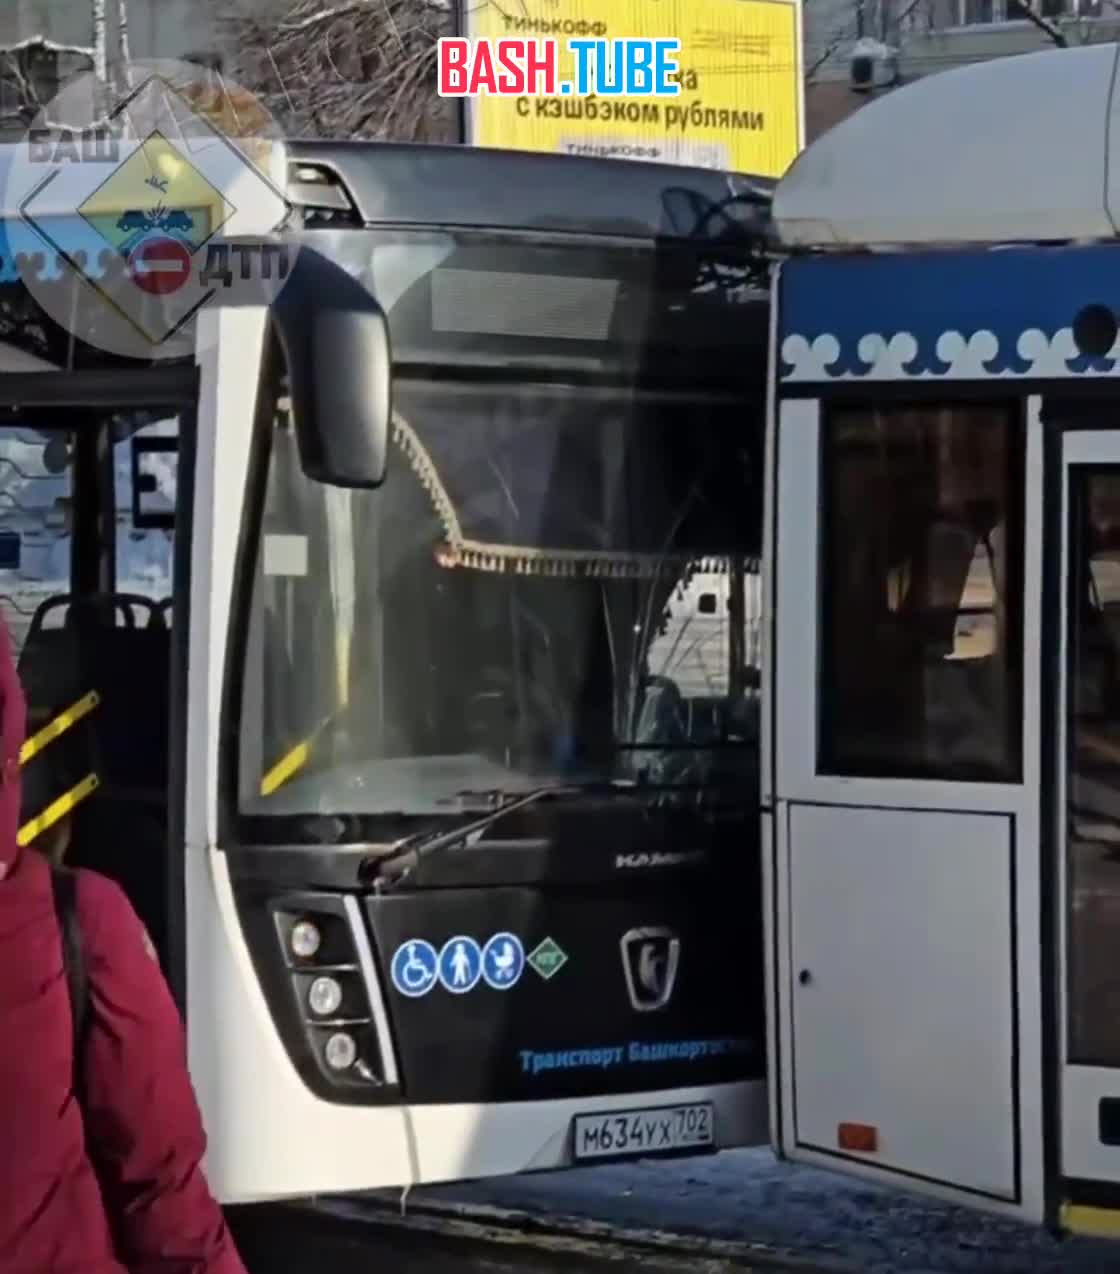  Уфимские автобусы врезались друг в друга на остановке